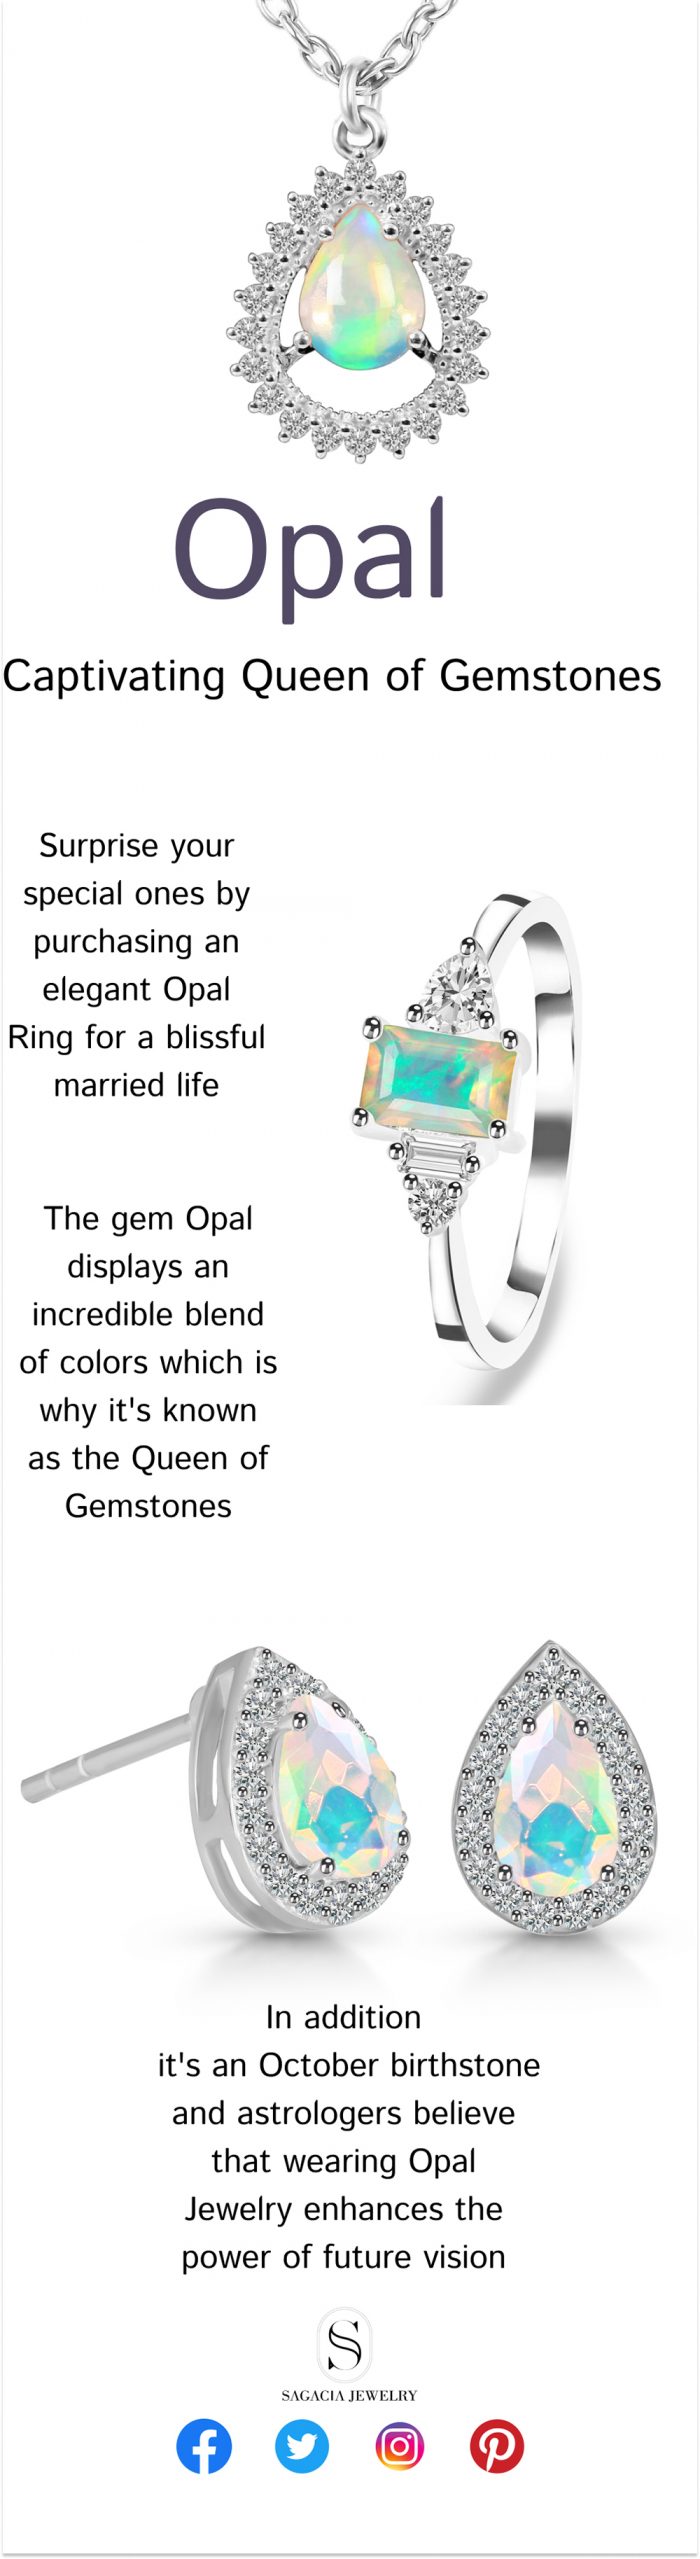 Opal – Captivating Queen Of Gemstones